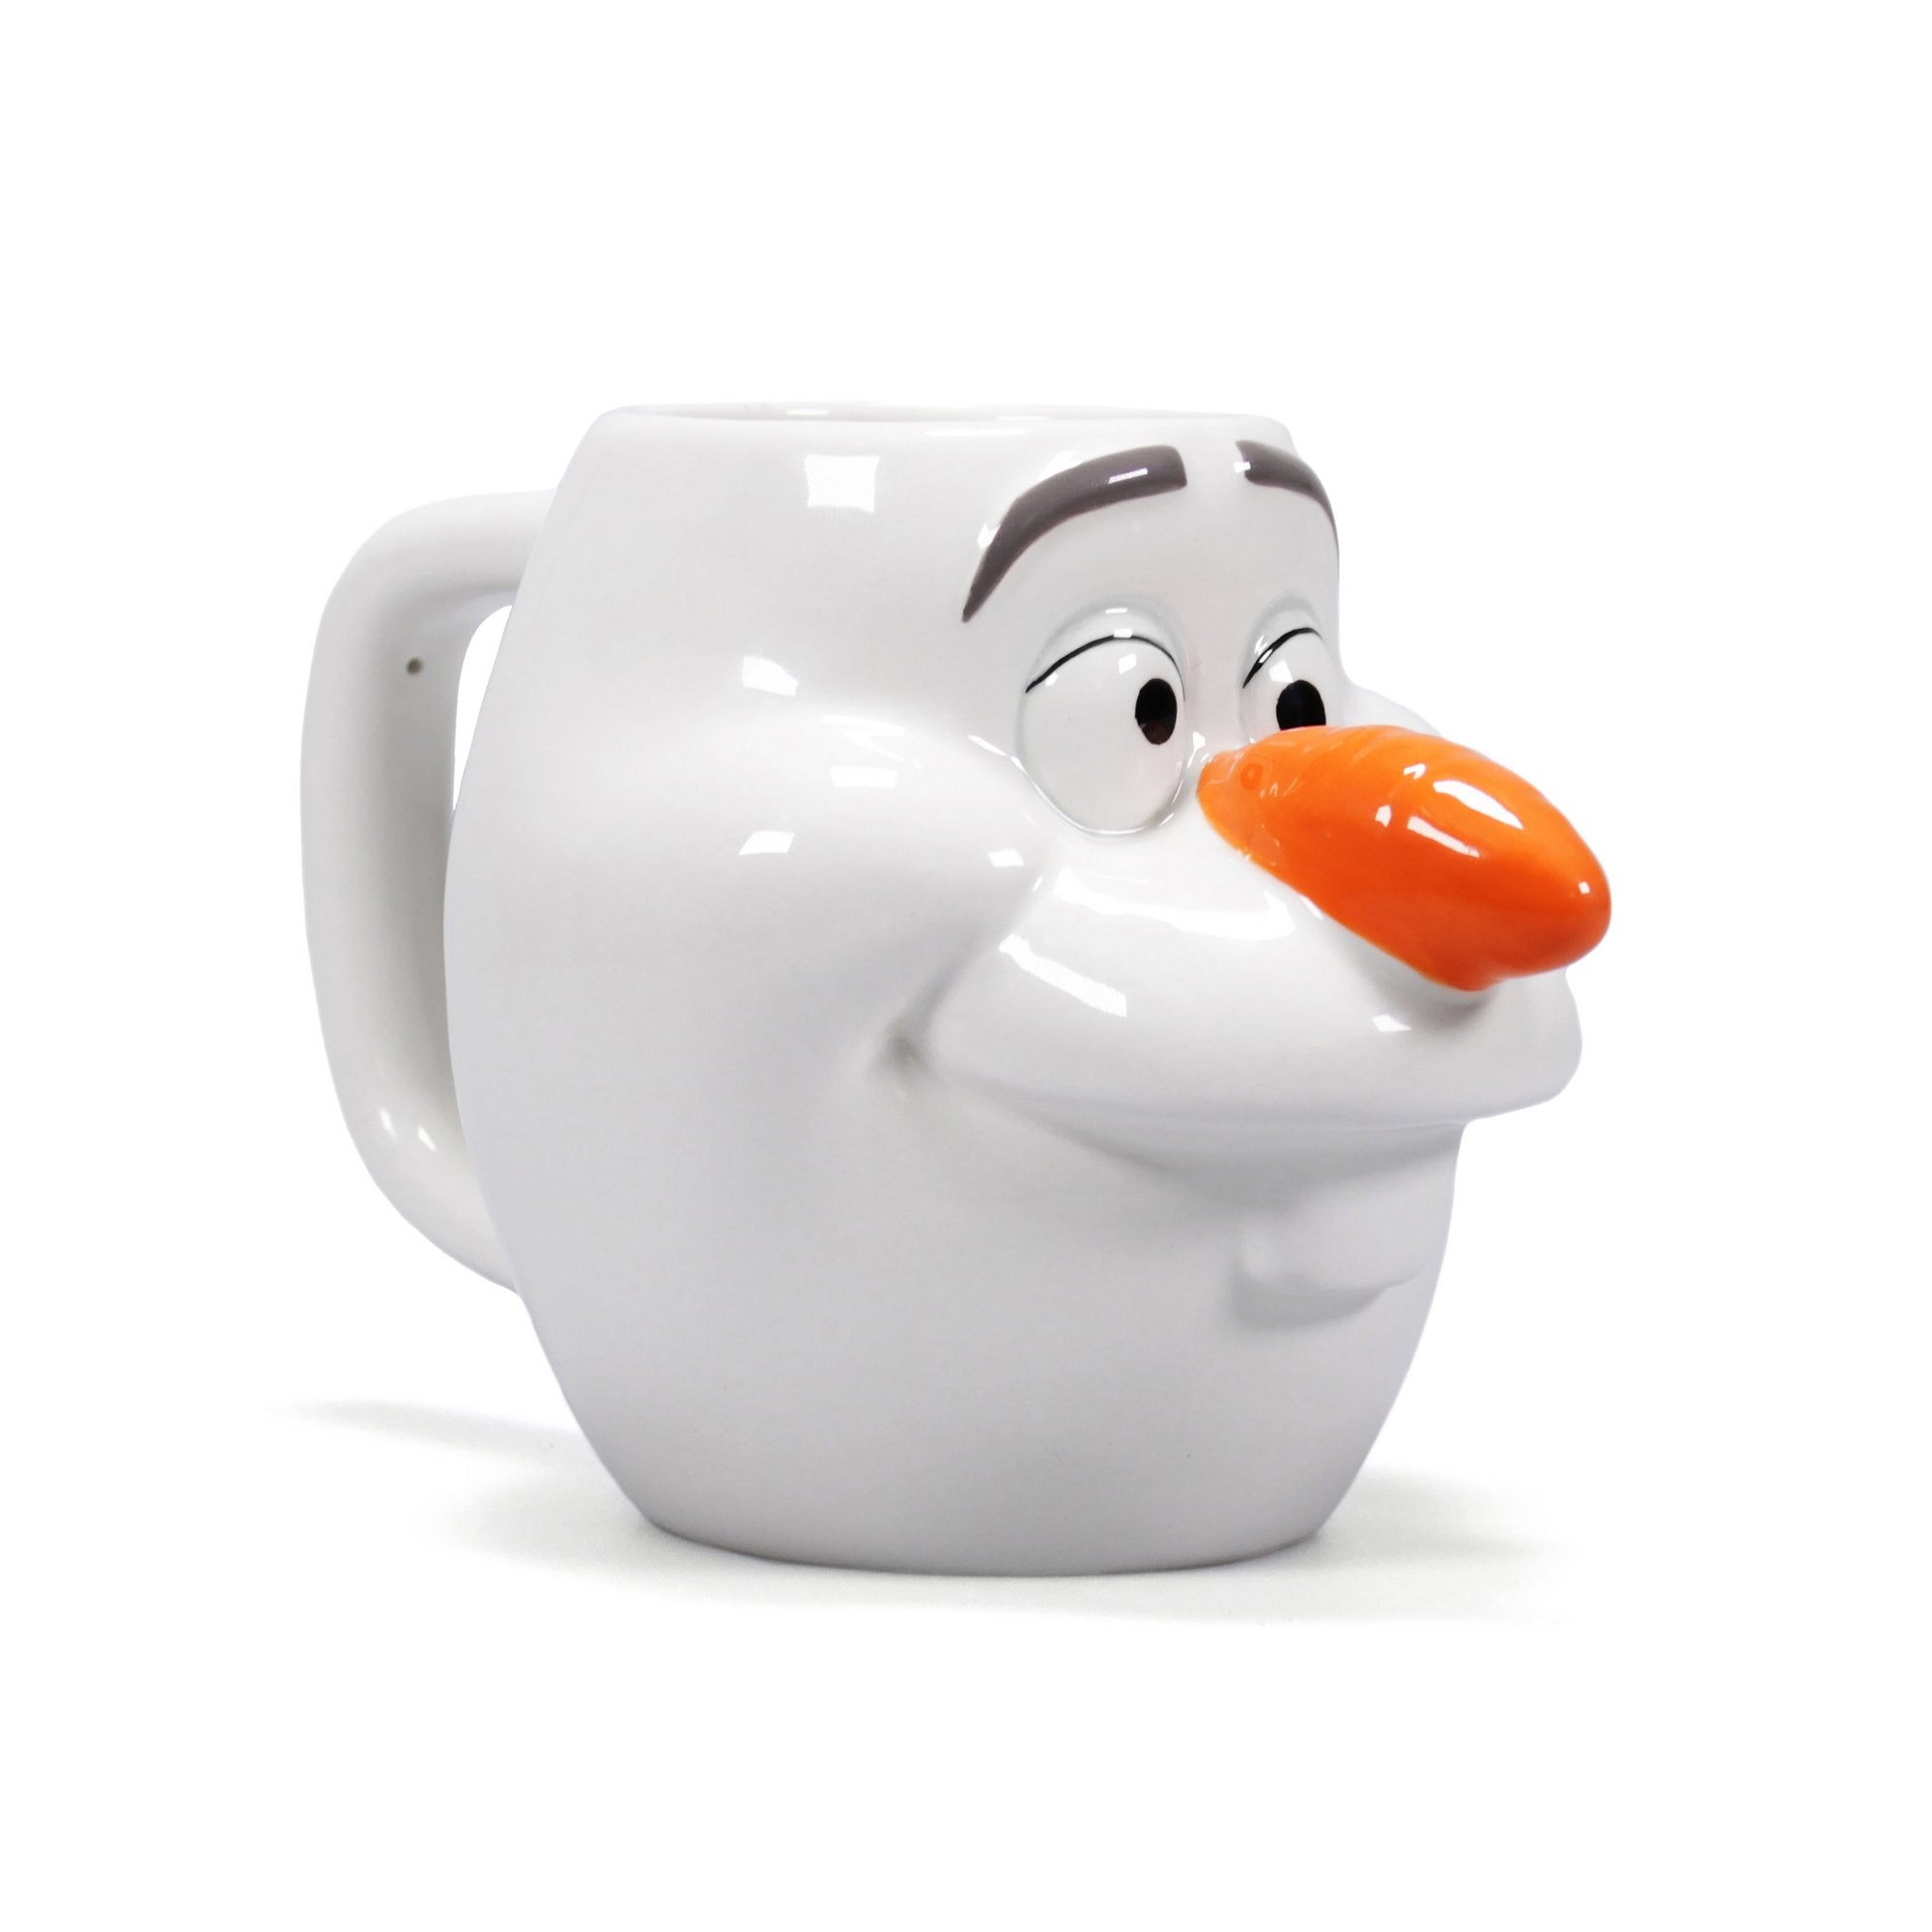 Frozen Shaped Mug - Olaf